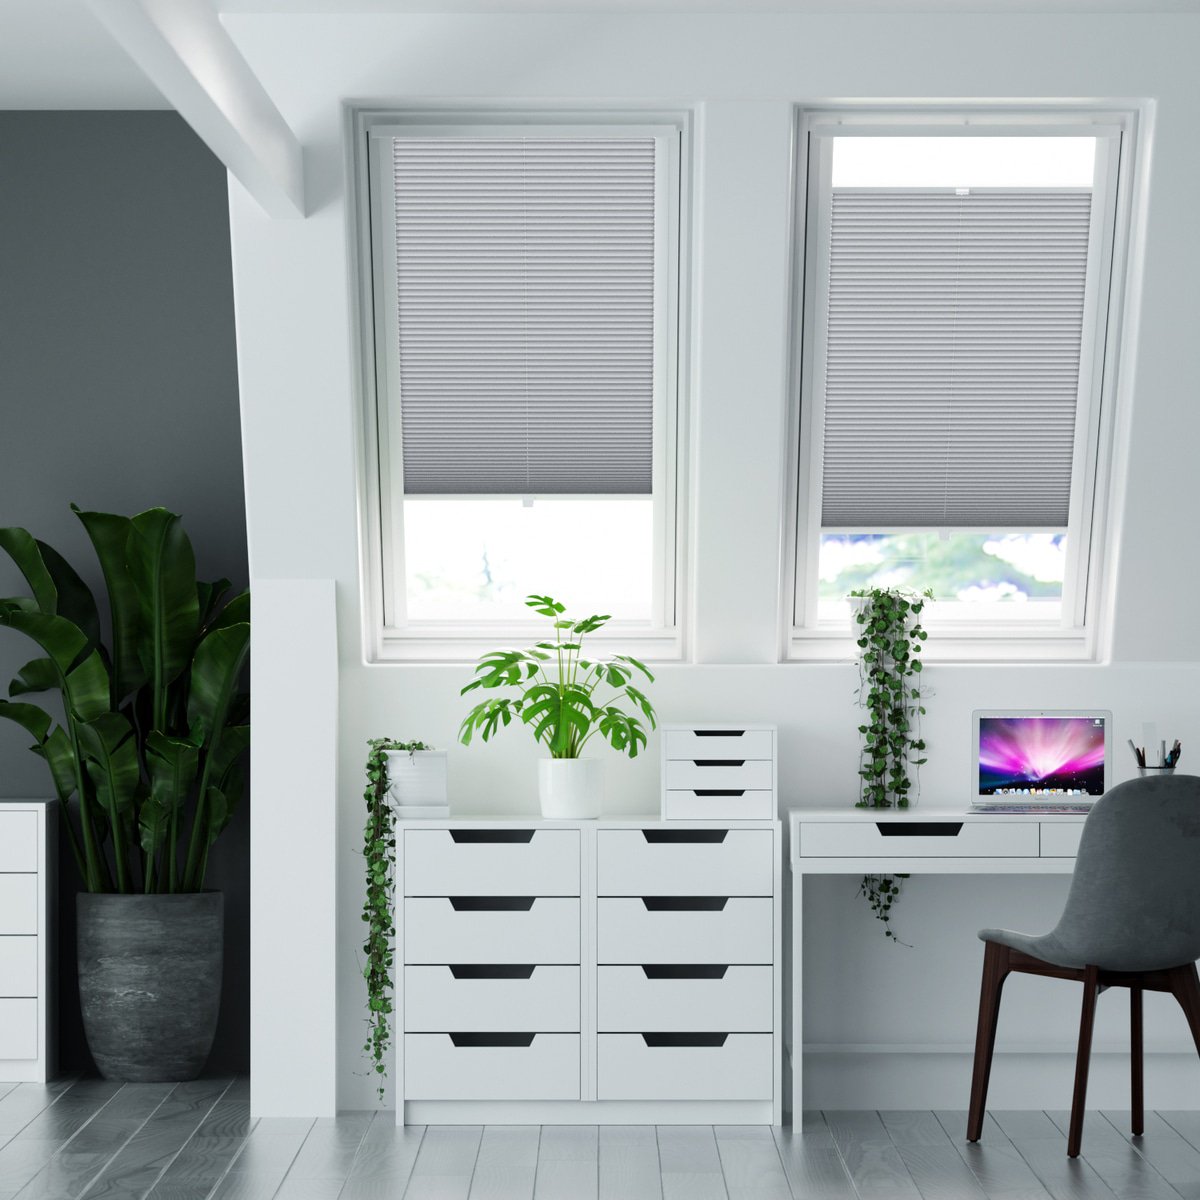 100% blickdichtes Plissee nach Maß mit Struktur, leicht glänzend -  Silbergrau | Sonnenschutz für Fenster nach Maß - Online-Shop